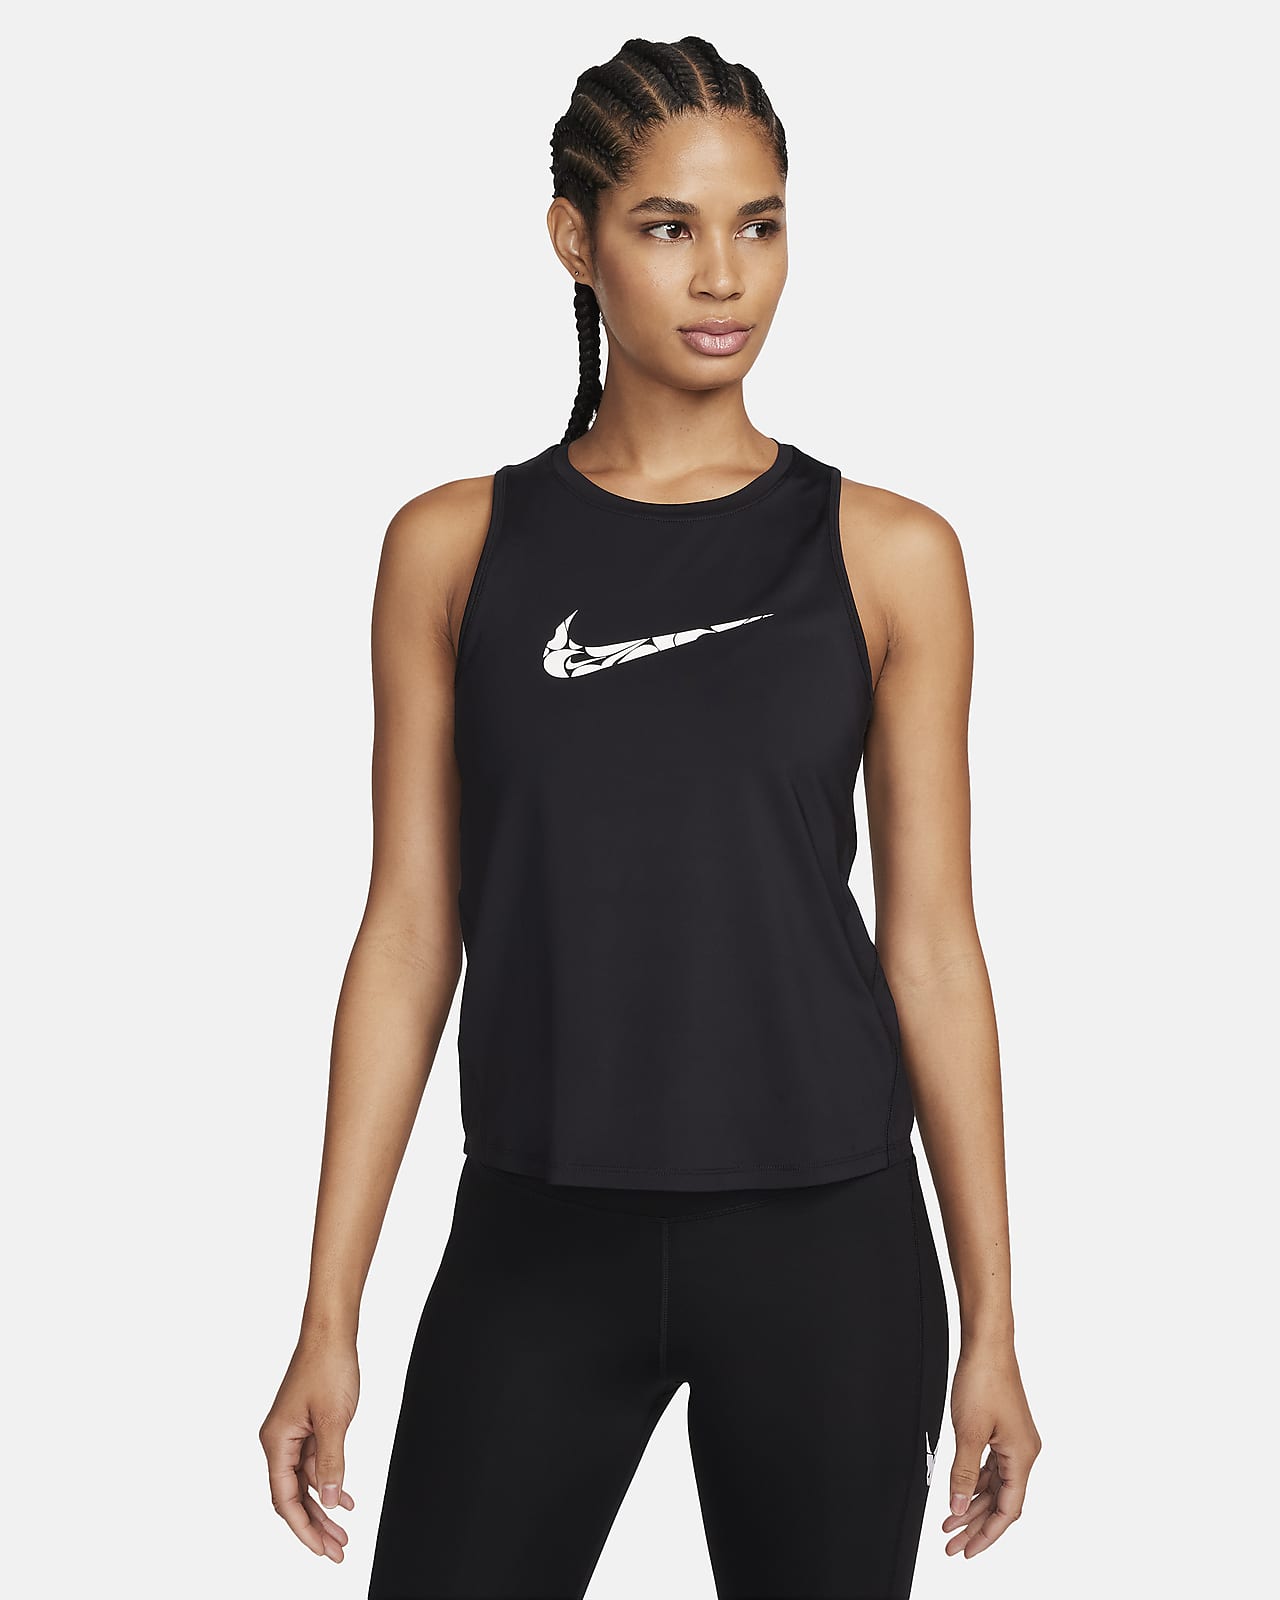 Nike One mintás női futótrikó